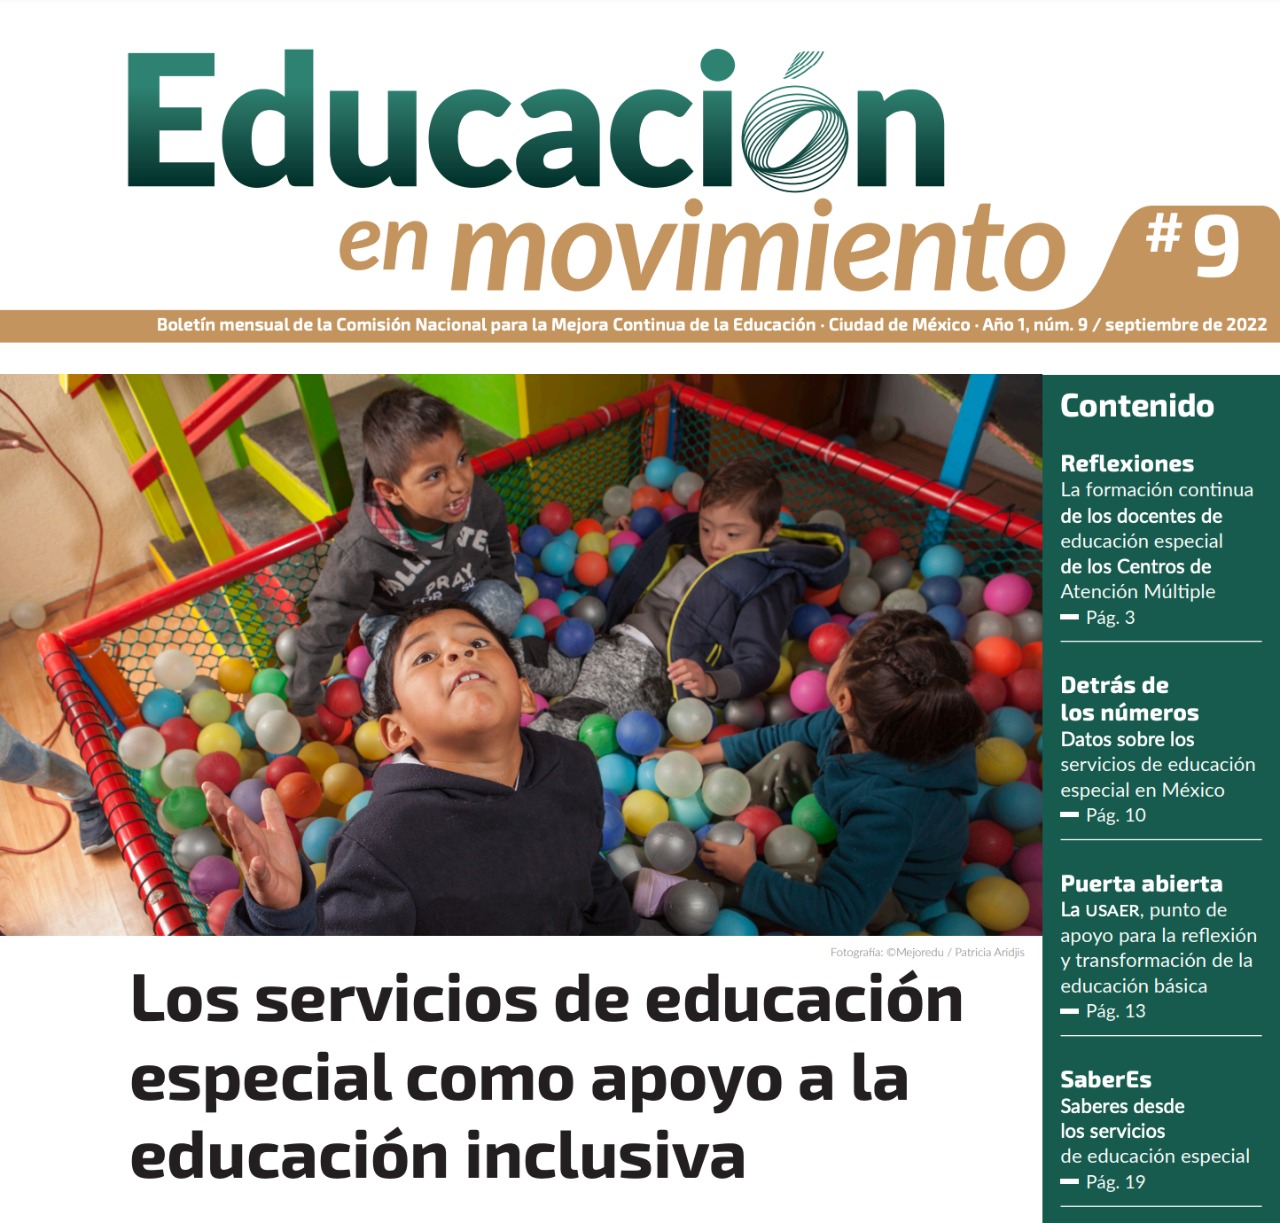 Los servicios de educación especial como apoyo a la educación inclusiva